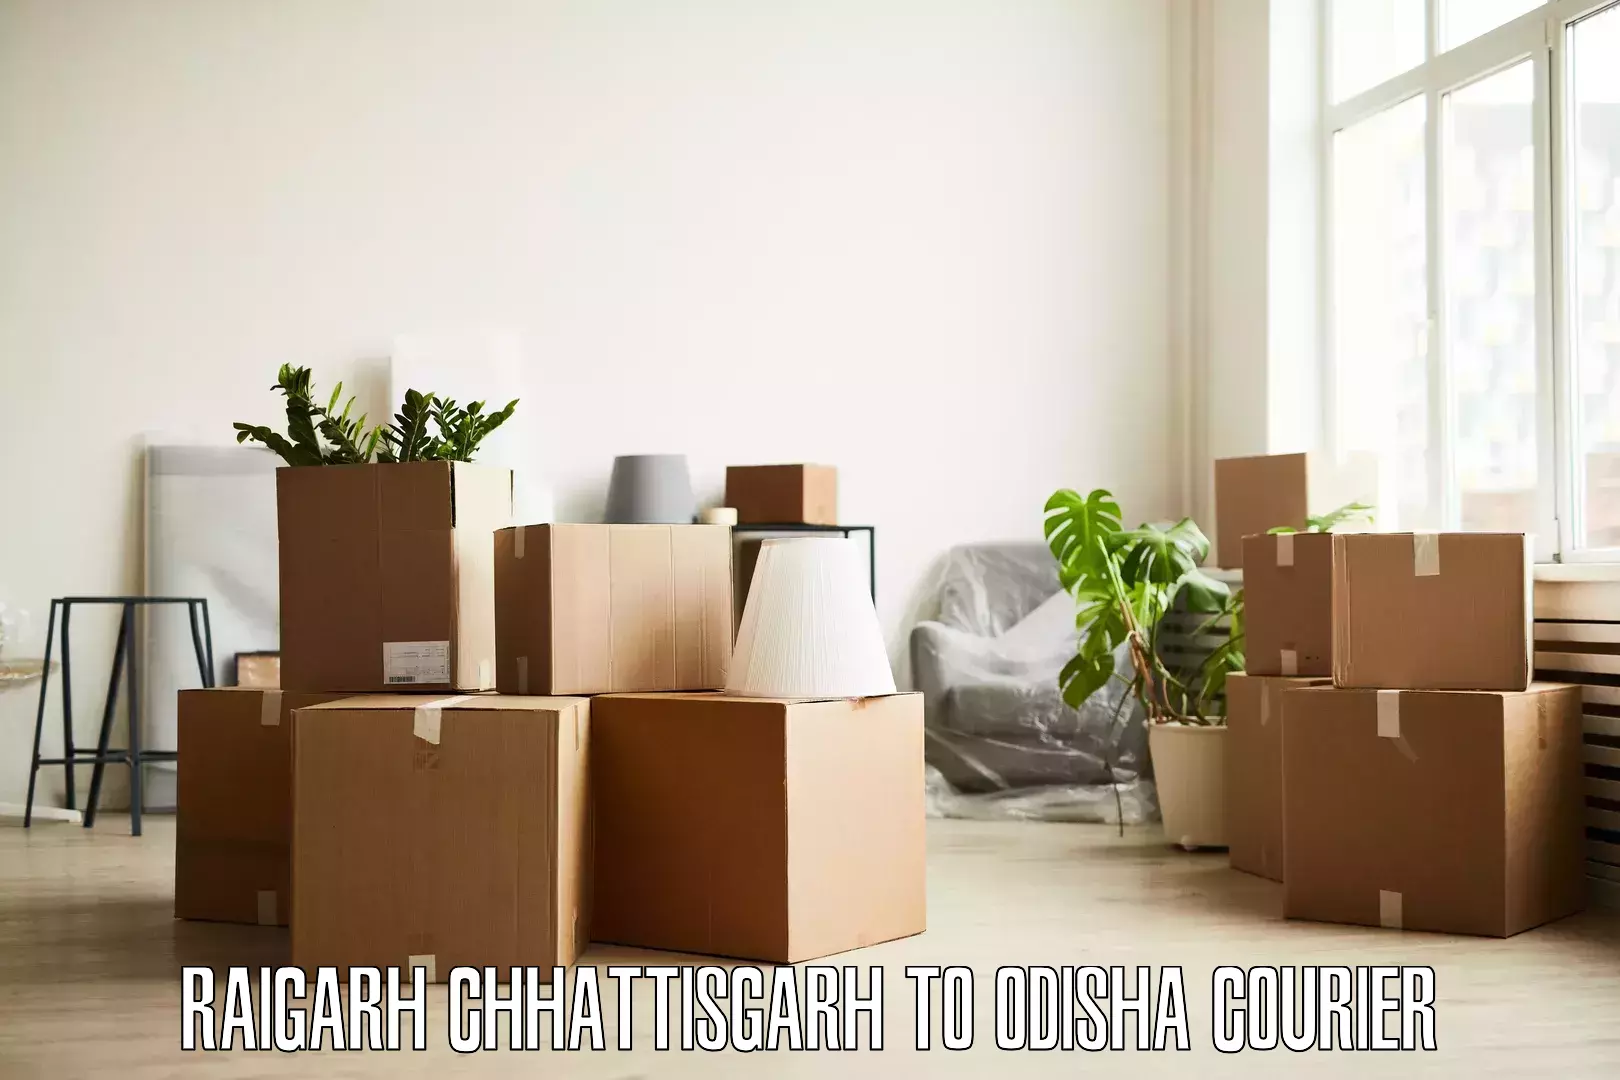 Furniture delivery service Raigarh Chhattisgarh to Subdega